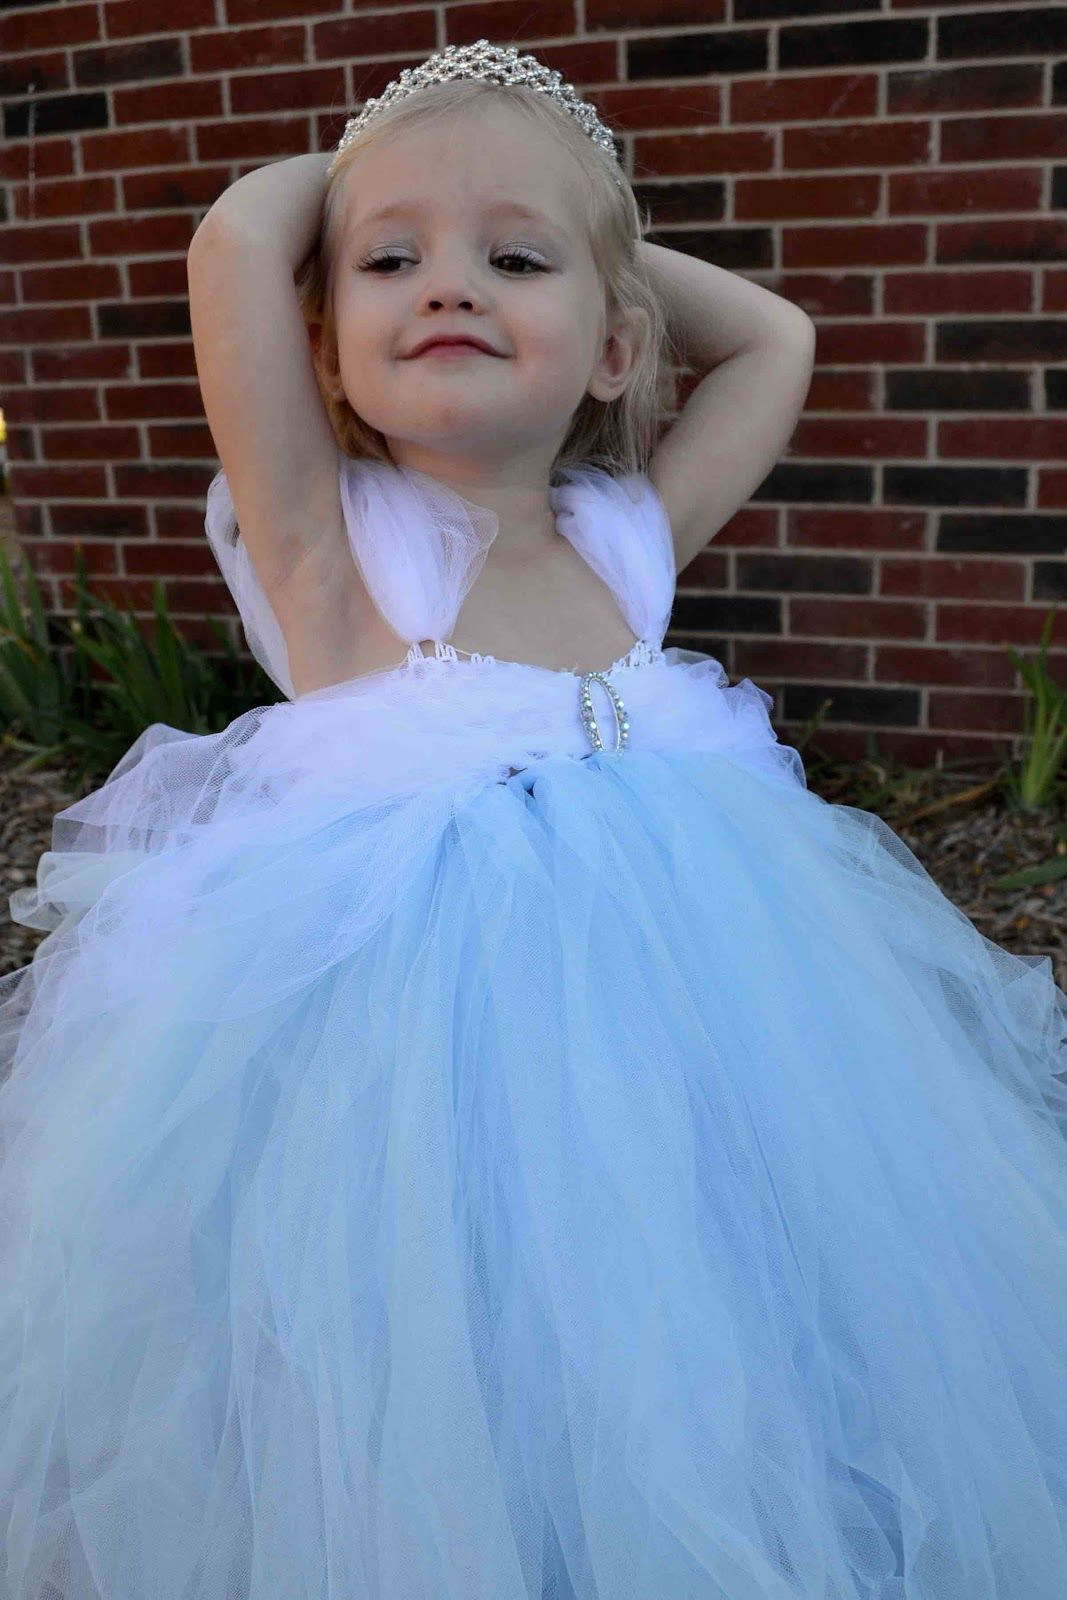 DIY Tutu Skirt For Toddler
 DIY Tulle skirts on Pinterest